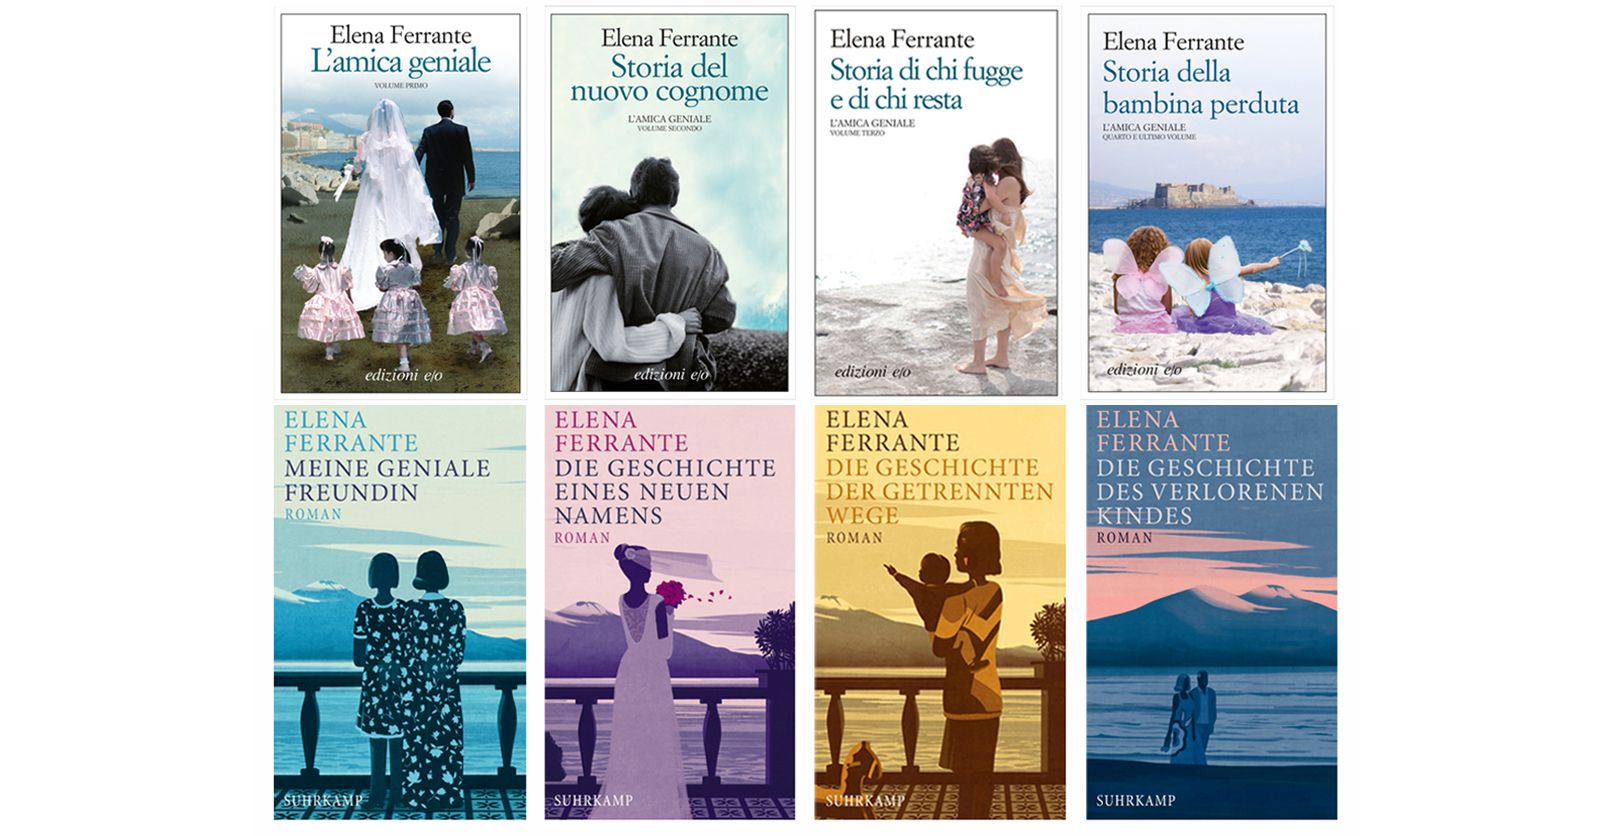 Beitrag zu #FerranteFever weltweit: Die Cover der internationalen Ausgaben